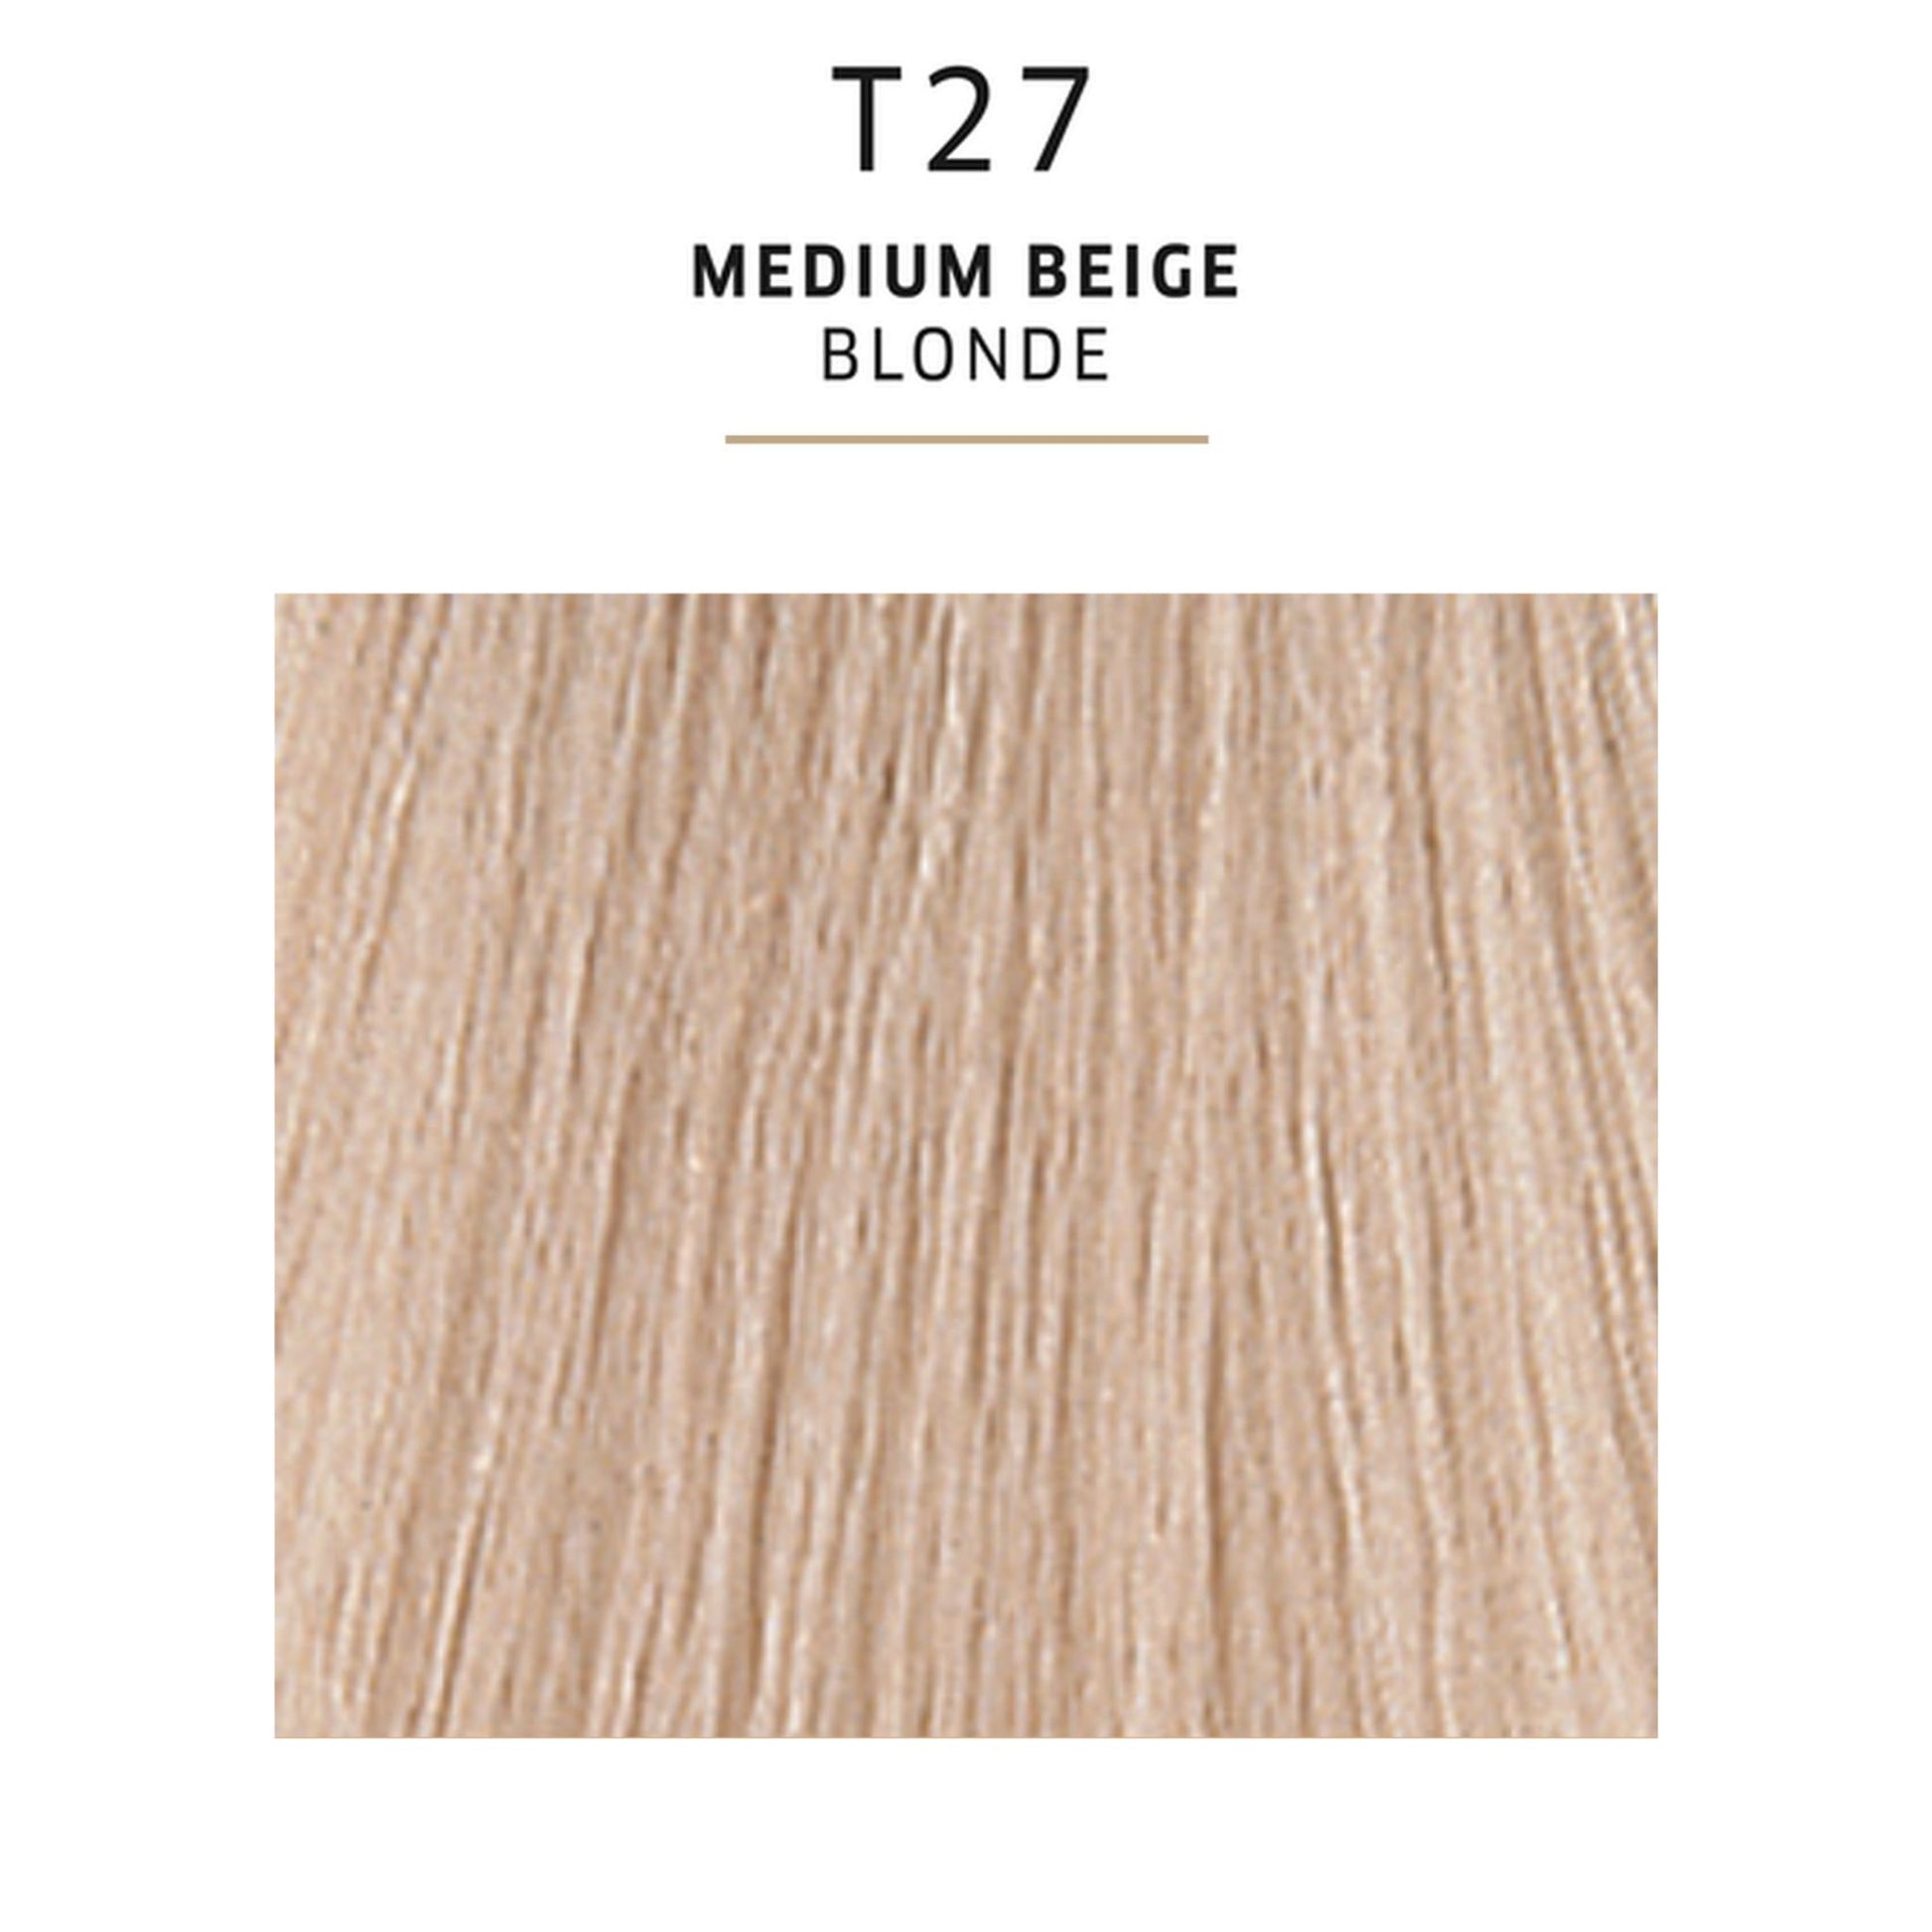 Wella Colour Charm T27 Medium Beige Blonde Toner